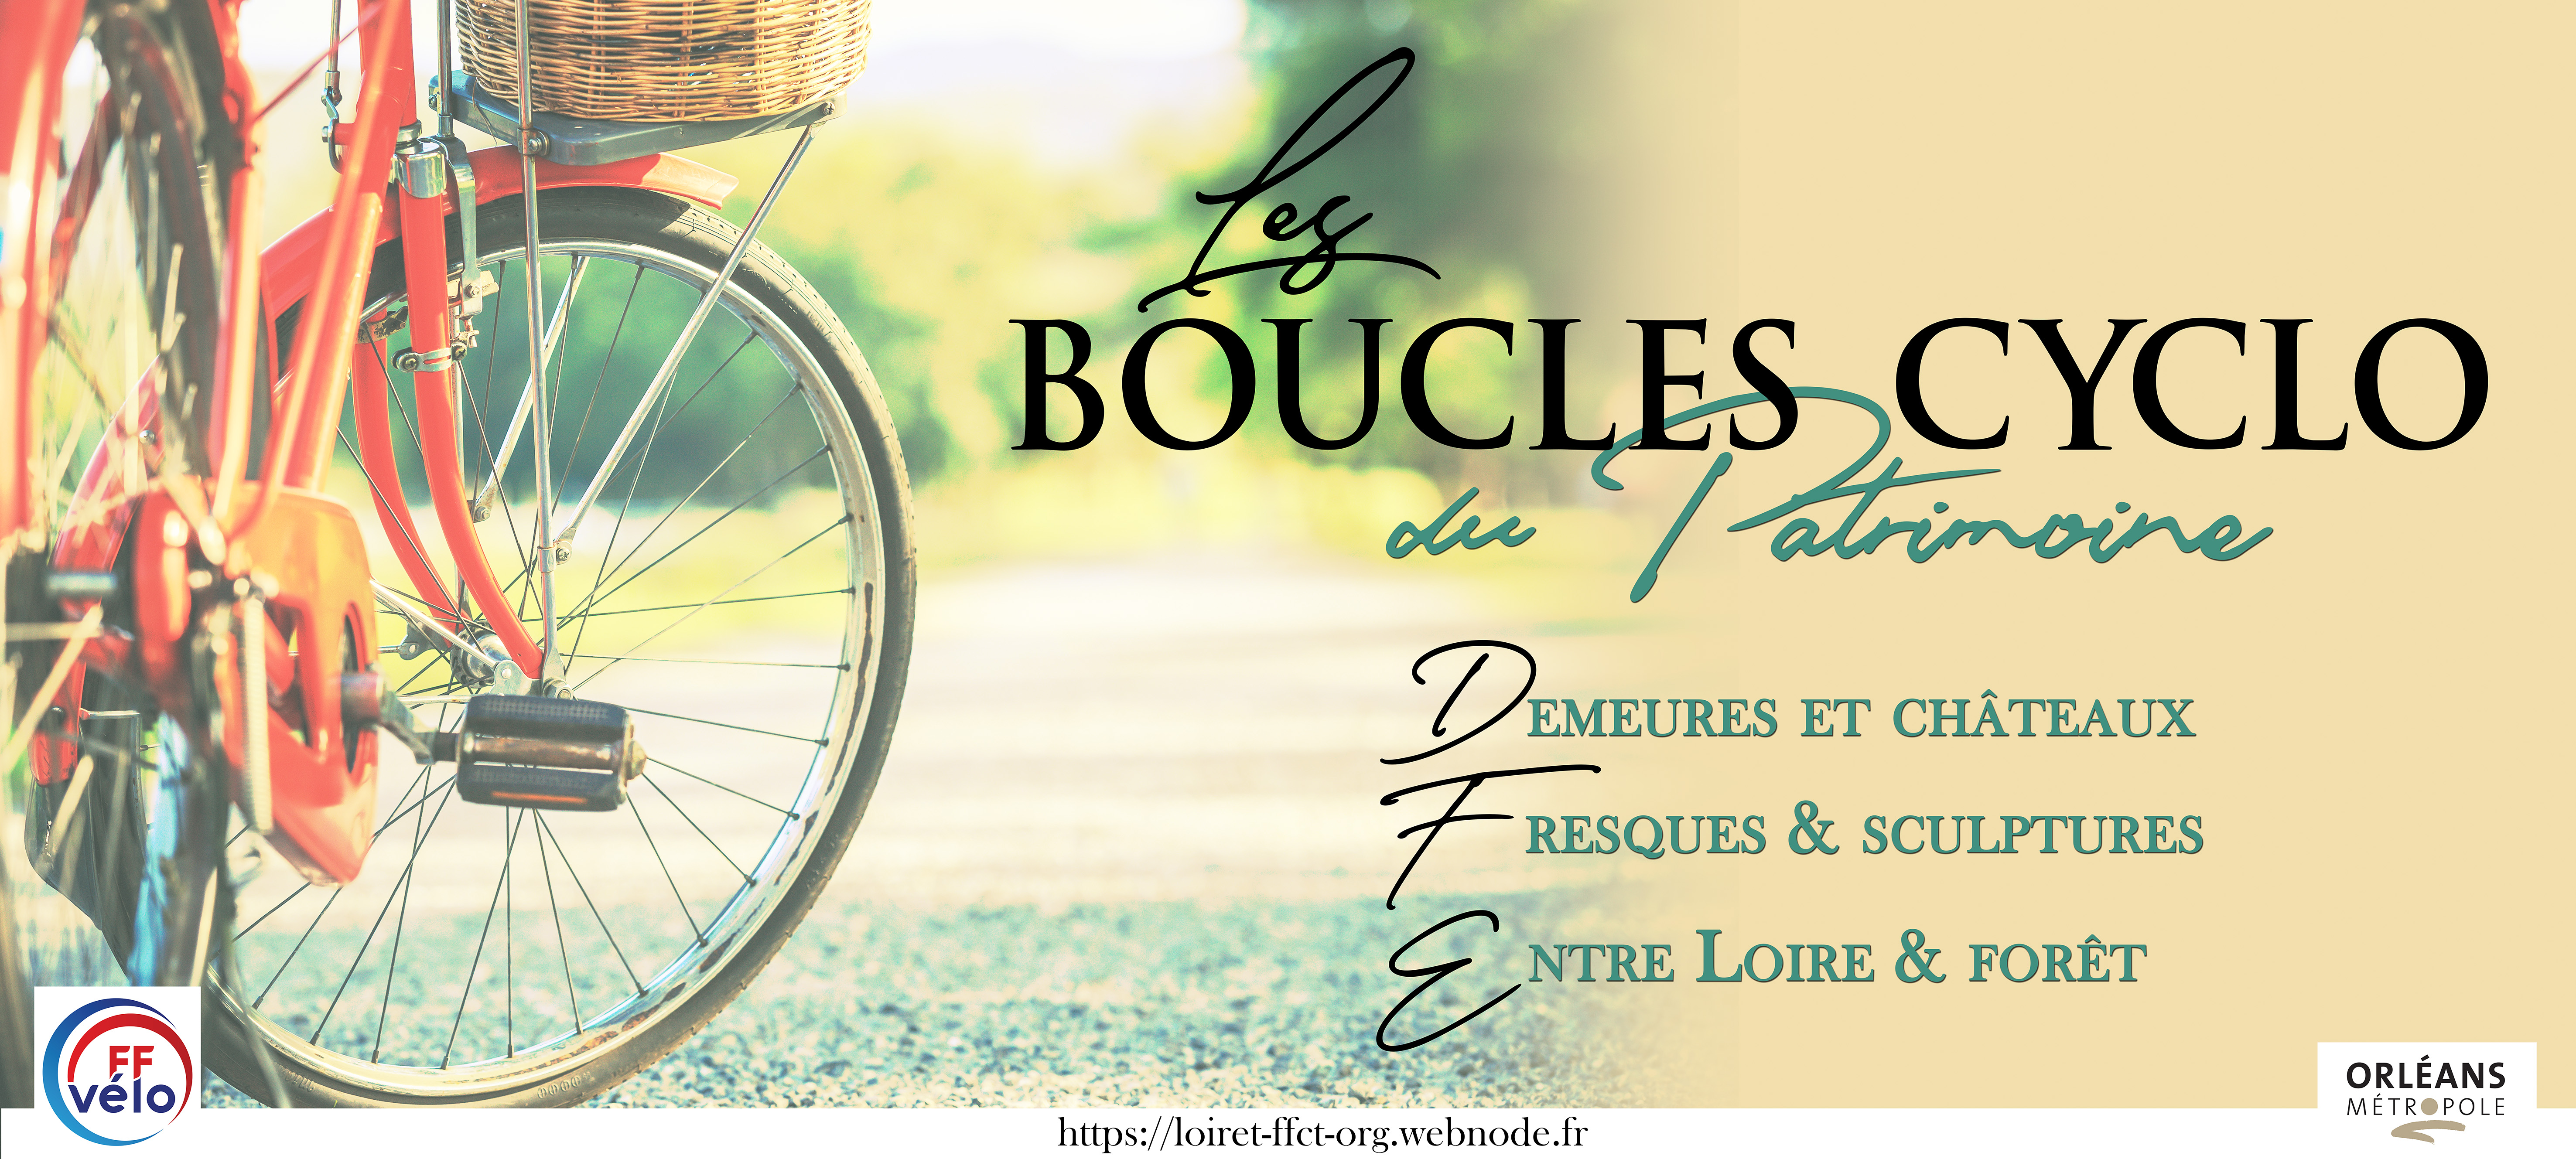 Informations et inscriptions aux Boucles Cyclo du Patrimoine